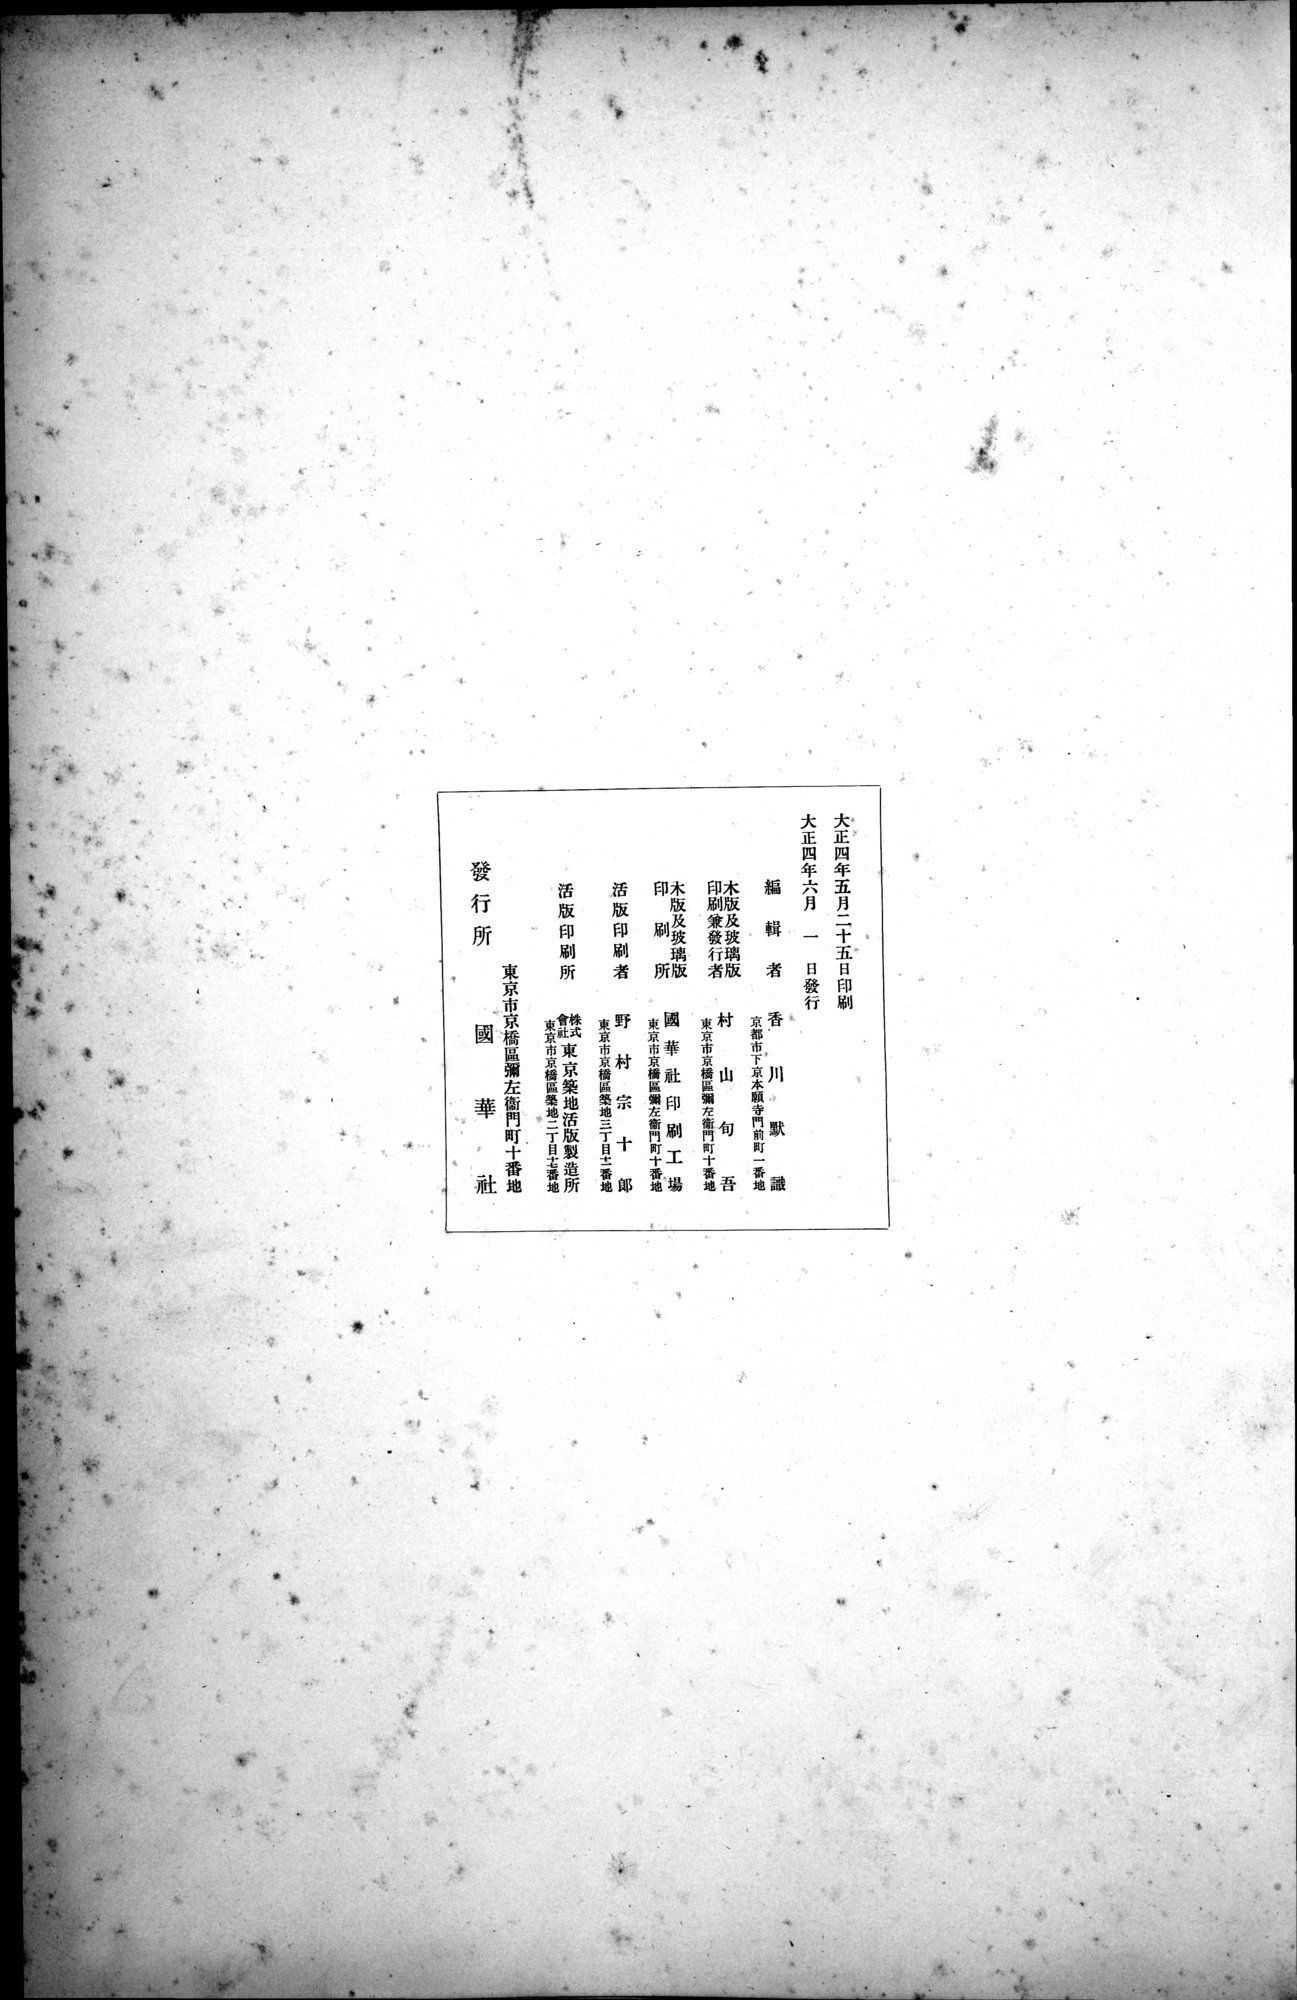 西域考古図譜 : vol.2 / Page 317 (Grayscale High Resolution Image)